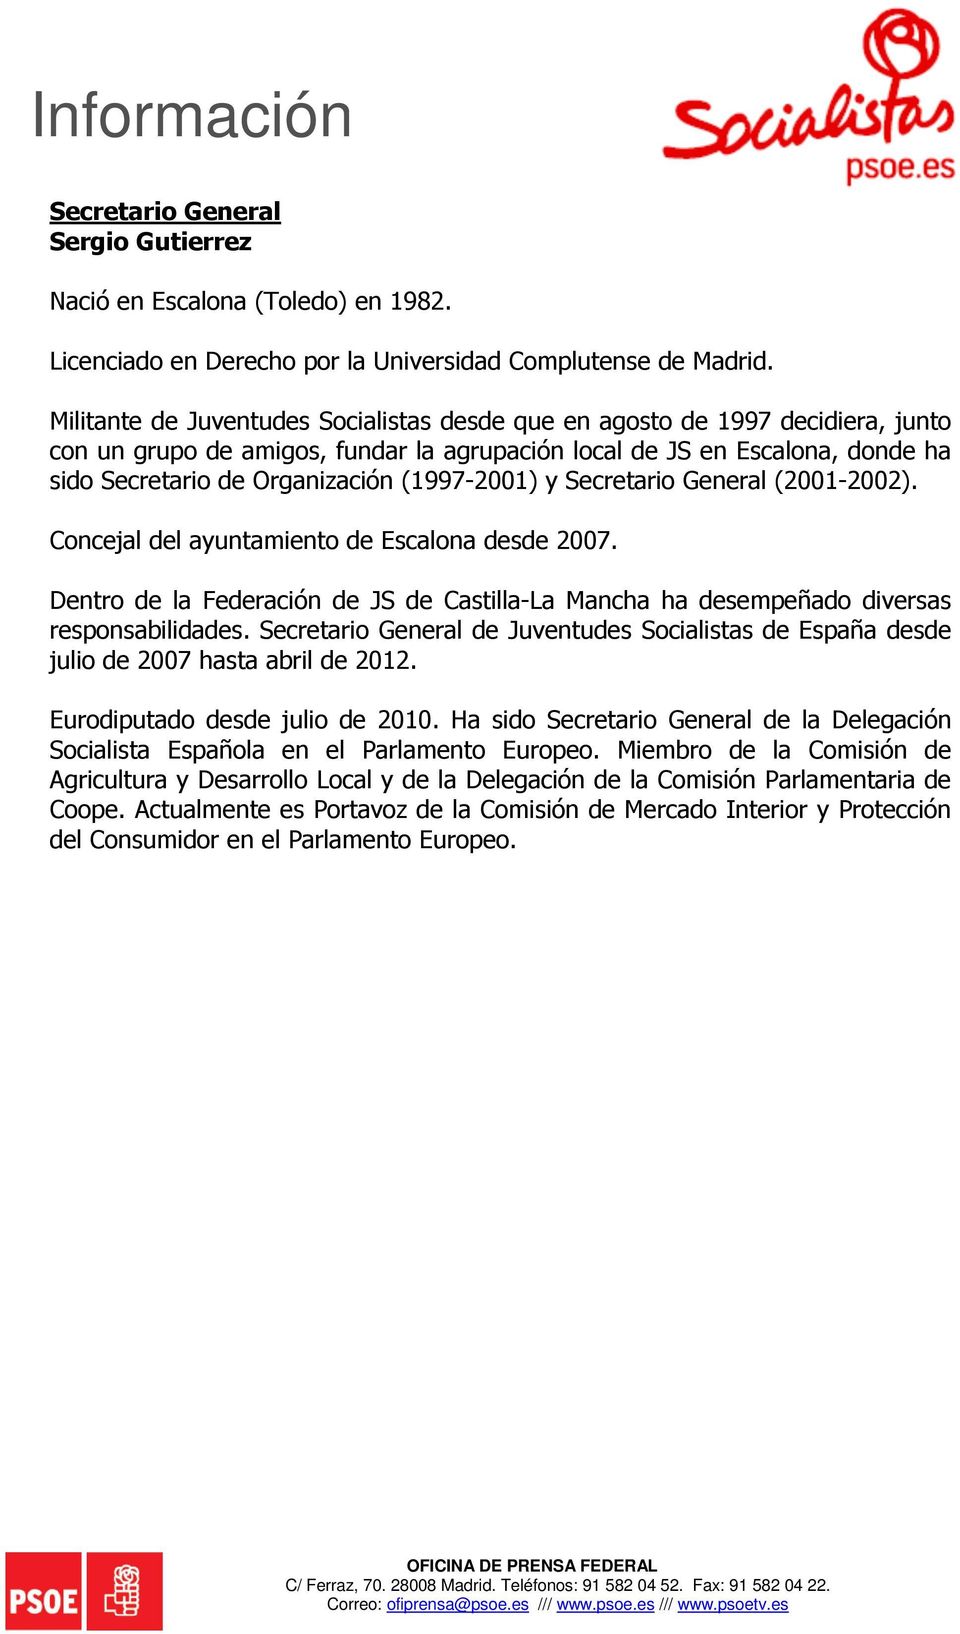 (1997-2001) y Secretario General (2001-2002). Concejal del ayuntamiento de Escalona desde 2007. Dentro de la Federación de JS de Castilla-La Mancha ha desempeñado diversas responsabilidades.